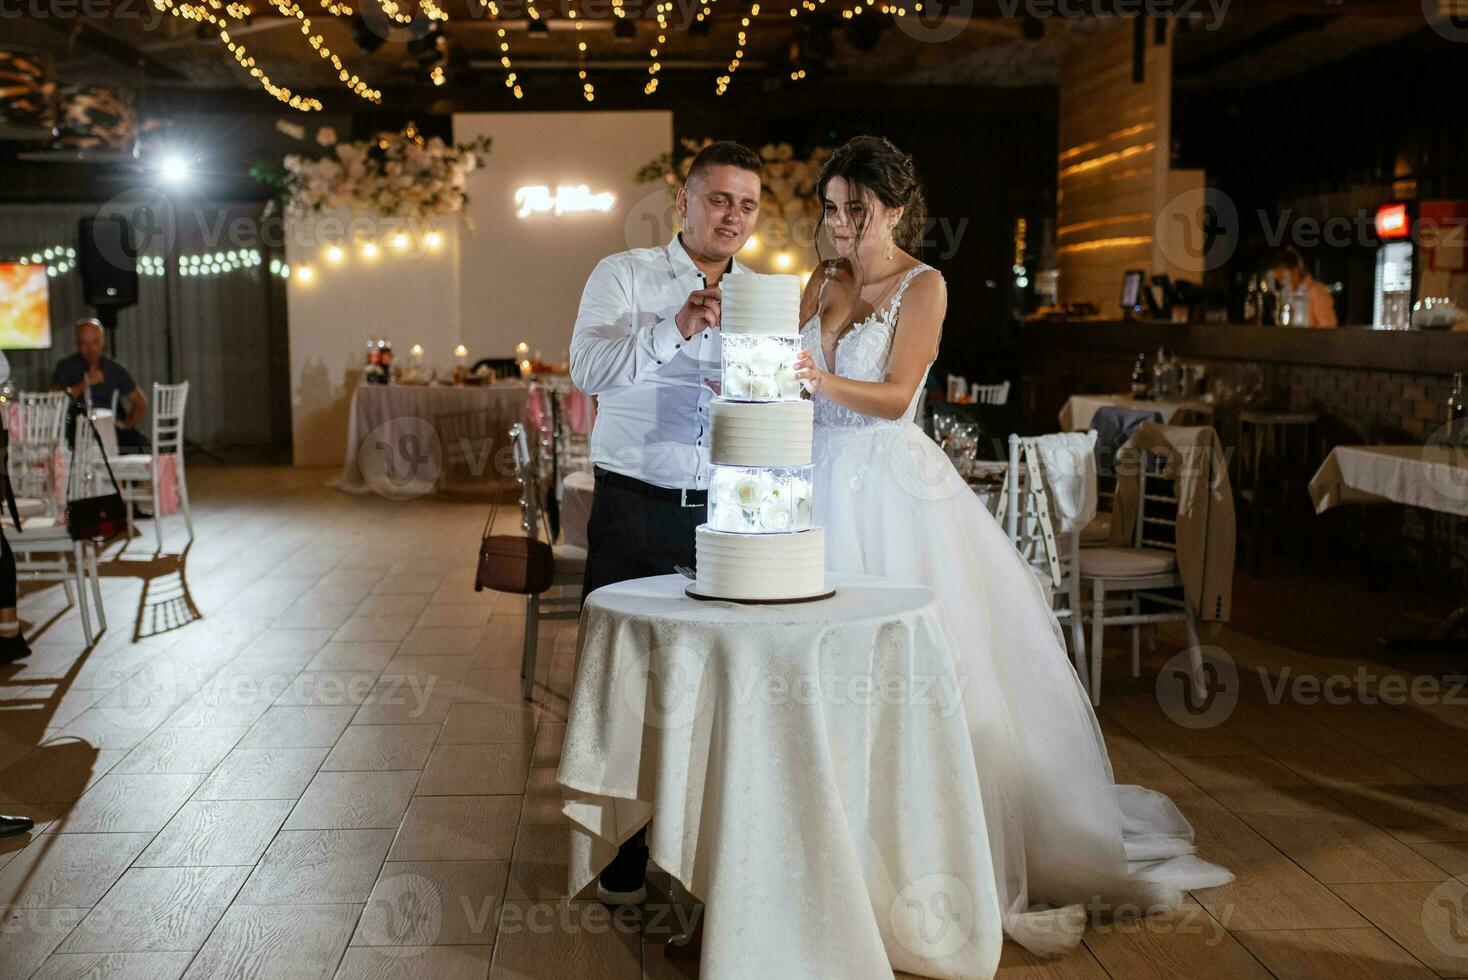 les jeunes mariés coupent et goûtent joyeusement le gâteau de mariage photo